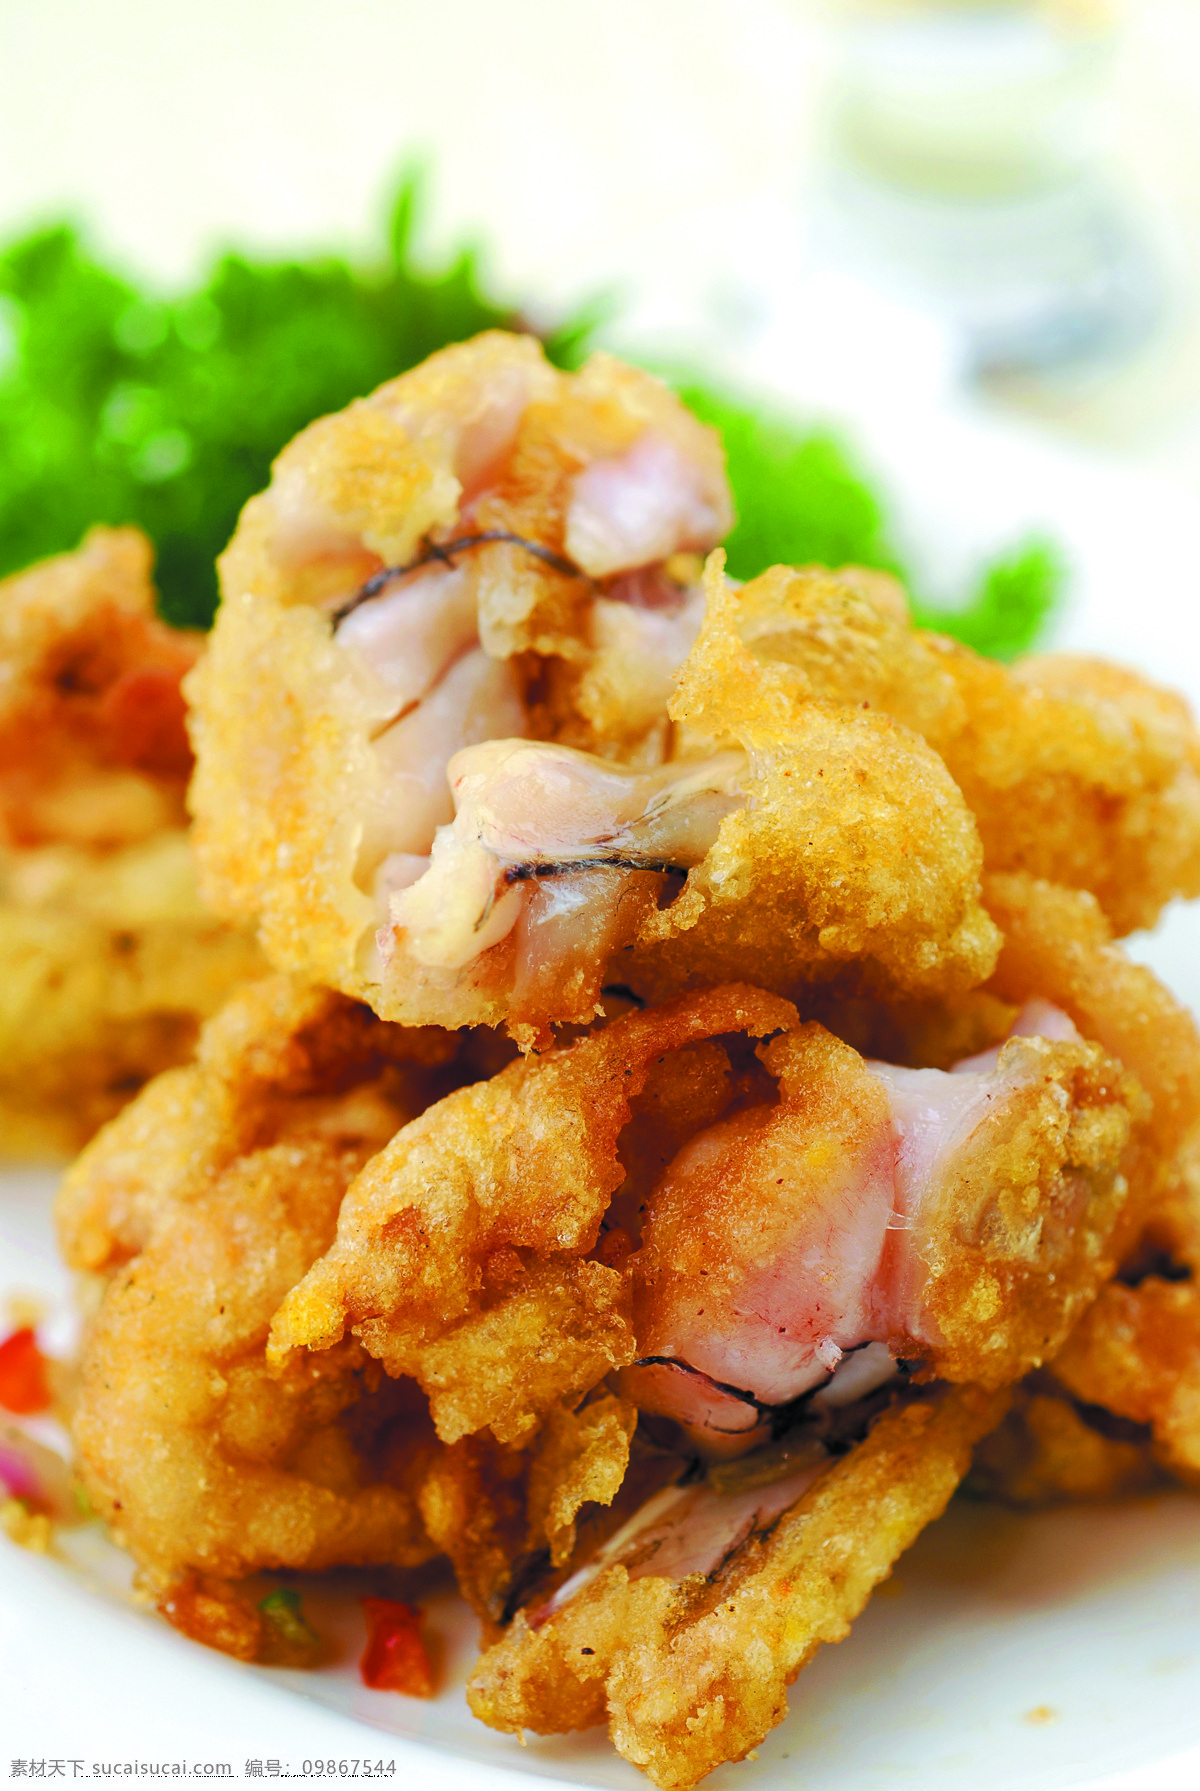 椒盐牛蛙腿 菜品 菜谱素材 美食 高清图片